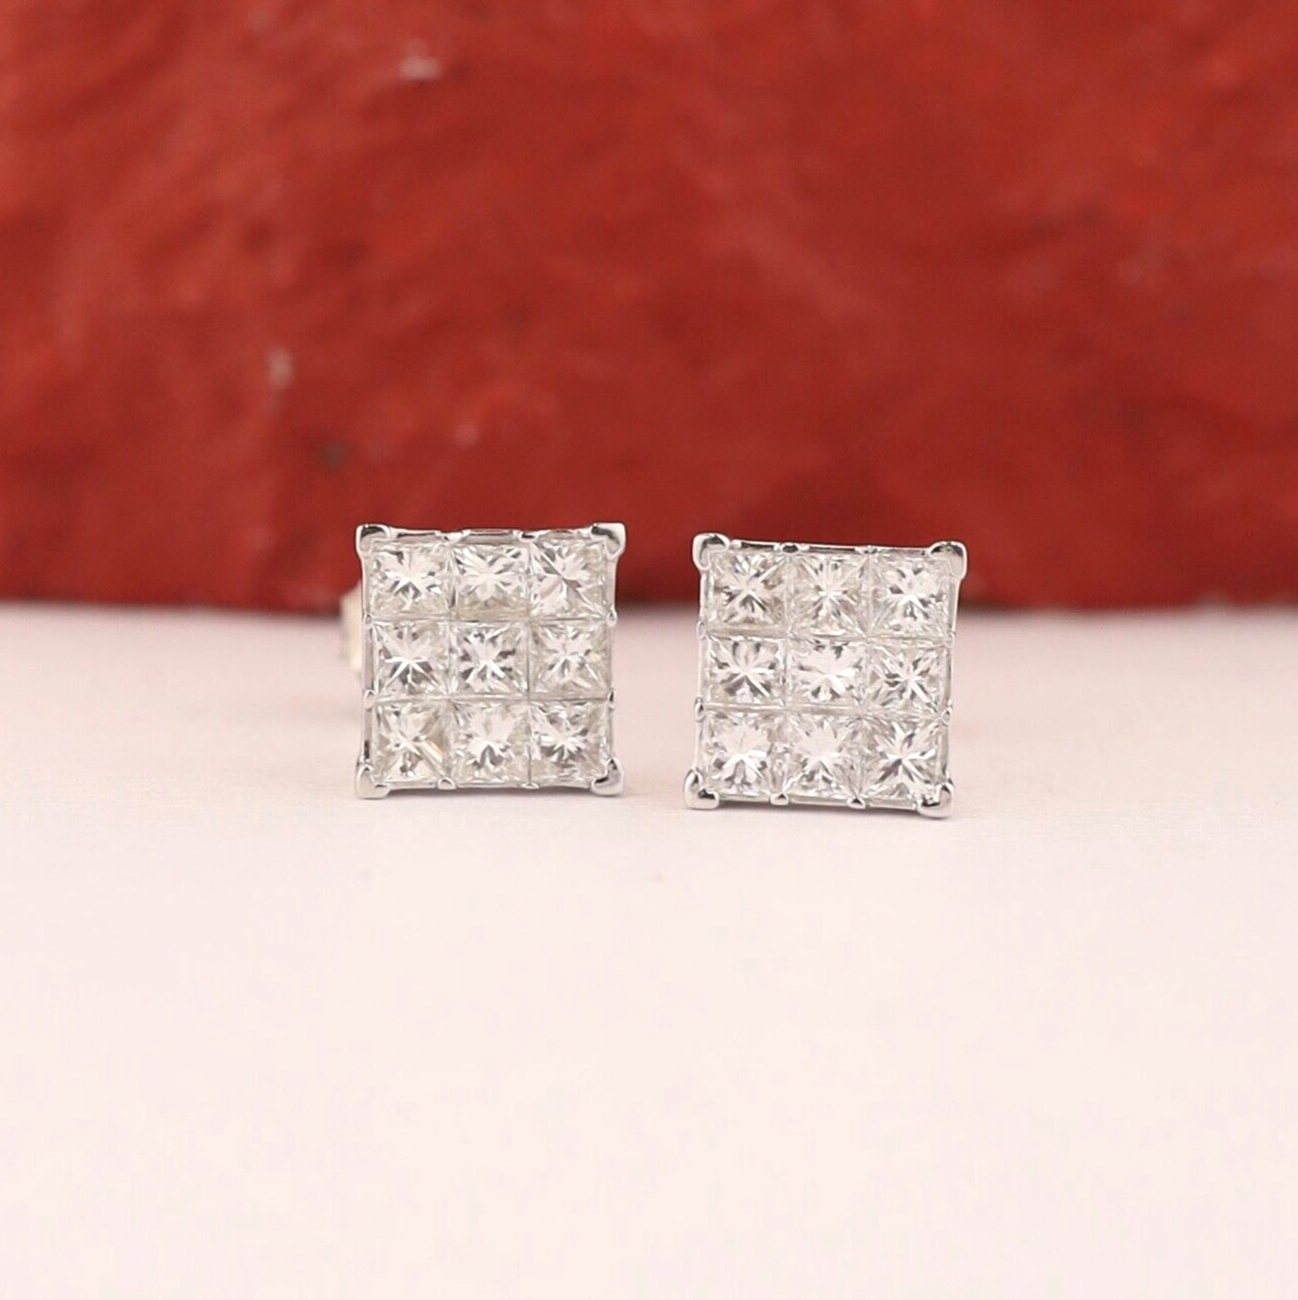 1.20 CTW Diamond Earrings 18k White Gold E042-1 WG